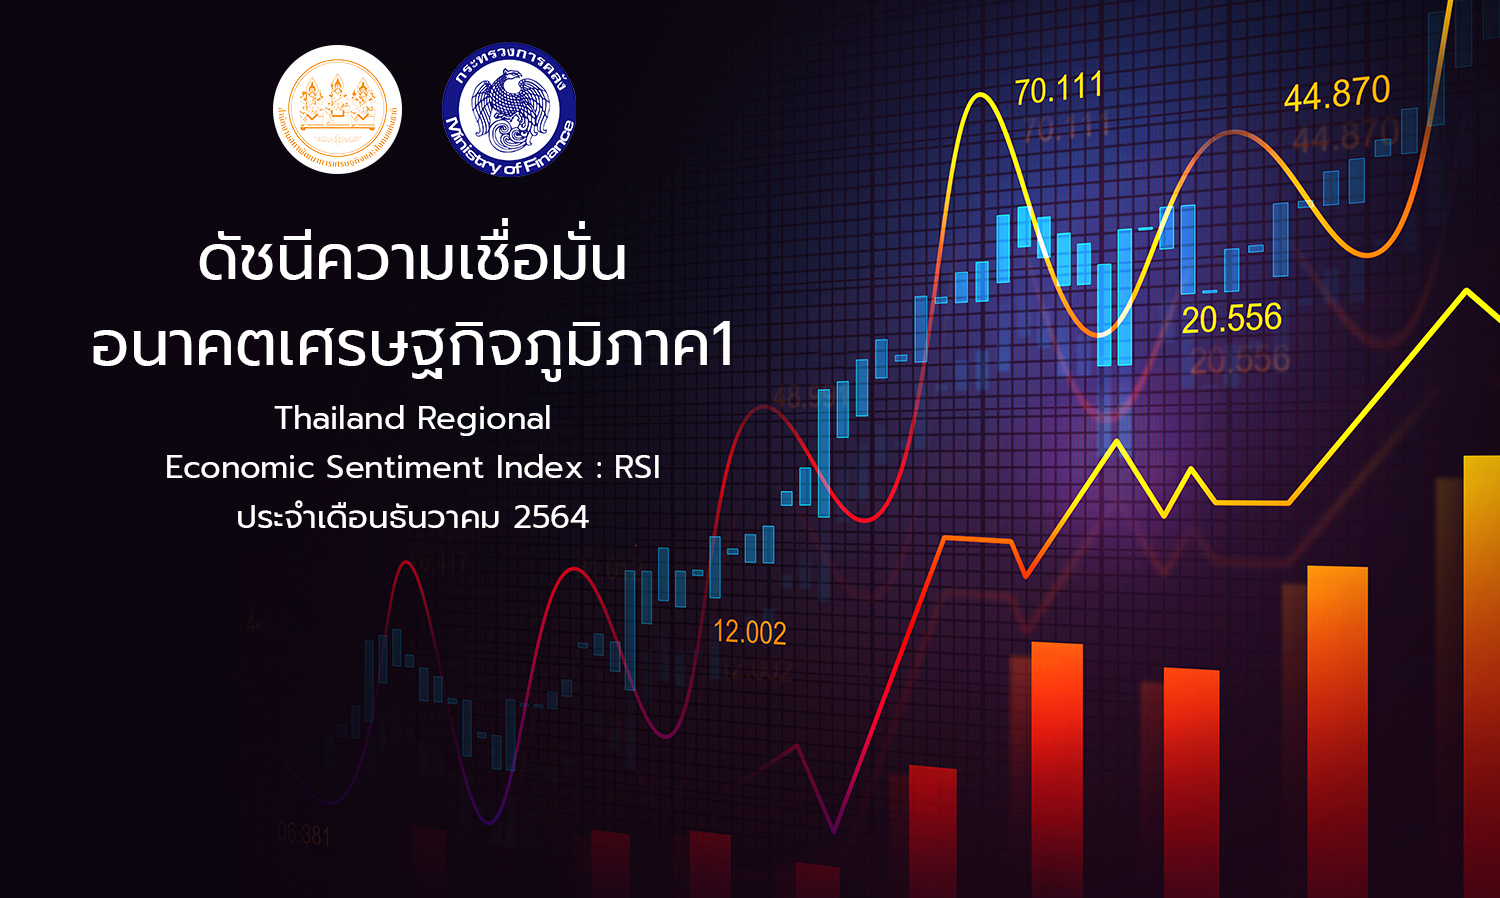 ดัชนีความเชื่อมั่นอนาคตเศรษฐกิจภูมิภาค1 (Thailand Regional Economic Sentiment Index: RSI) ประจําเดือนธันวาคม 2564